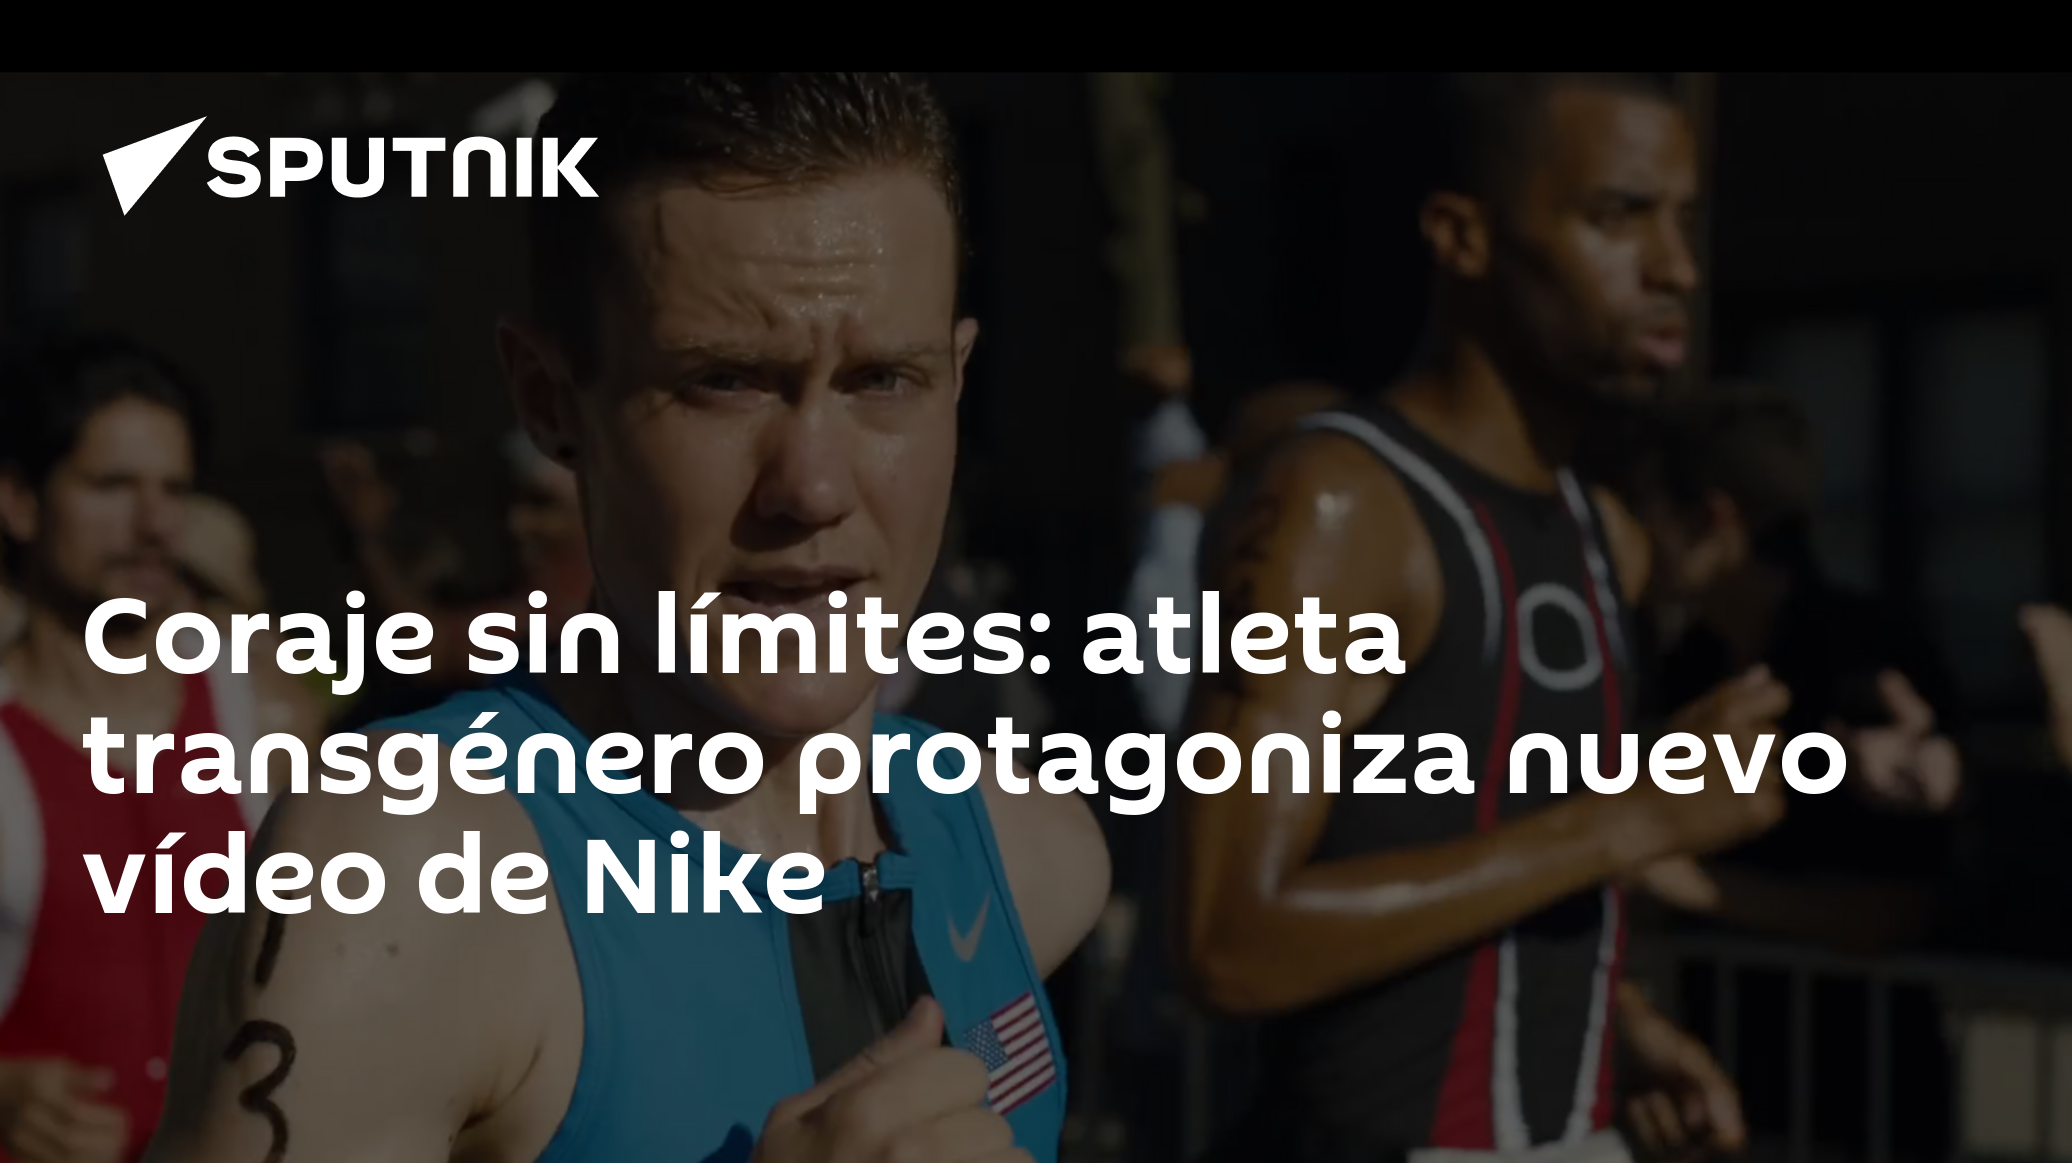 Coraje sin límites: atleta transgénero nuevo vídeo de Nike - 20.08.2016, Mundo